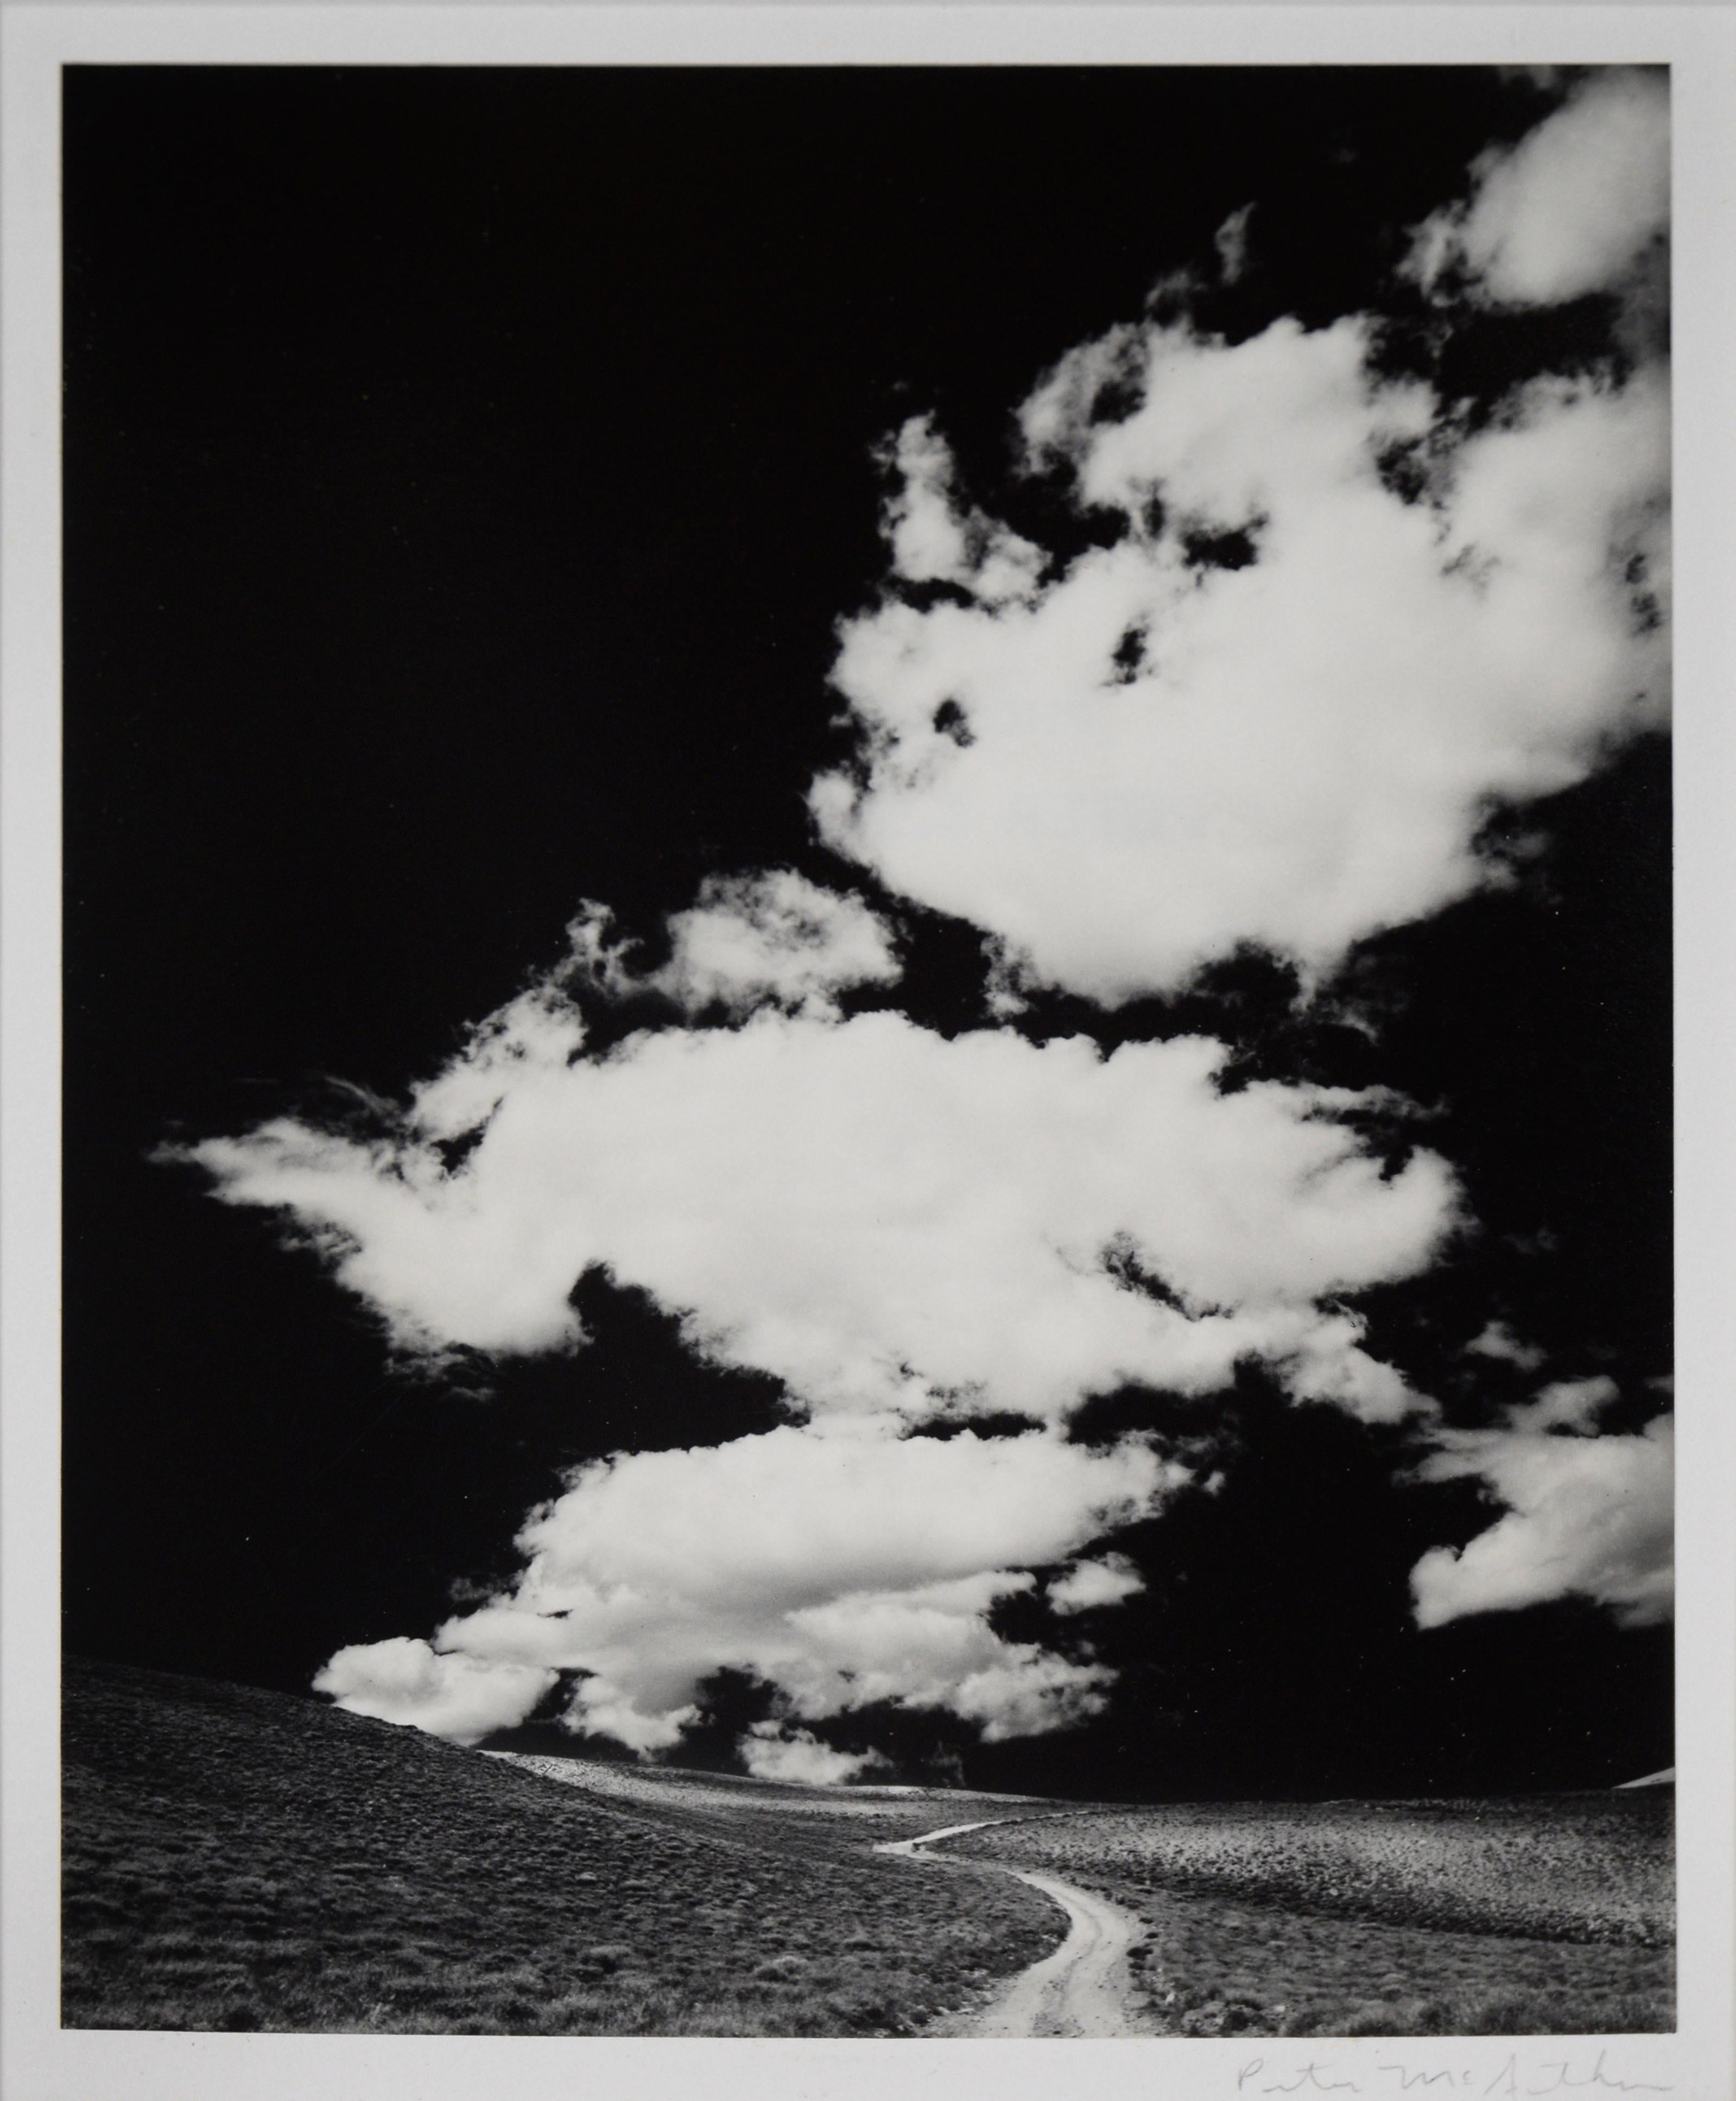 „White Mountains Road With Clouds, 1968“ – Schwarz-Weiß-Fotografie

Schwarz-Weiß-Fotografie von Peter McArthur (Amerikaner, geb. 1947), die eine unbefestigte Schotterstraße in den Bergen mit lebhaften weißen Wolken im Kontrast zum dunklen Himmel